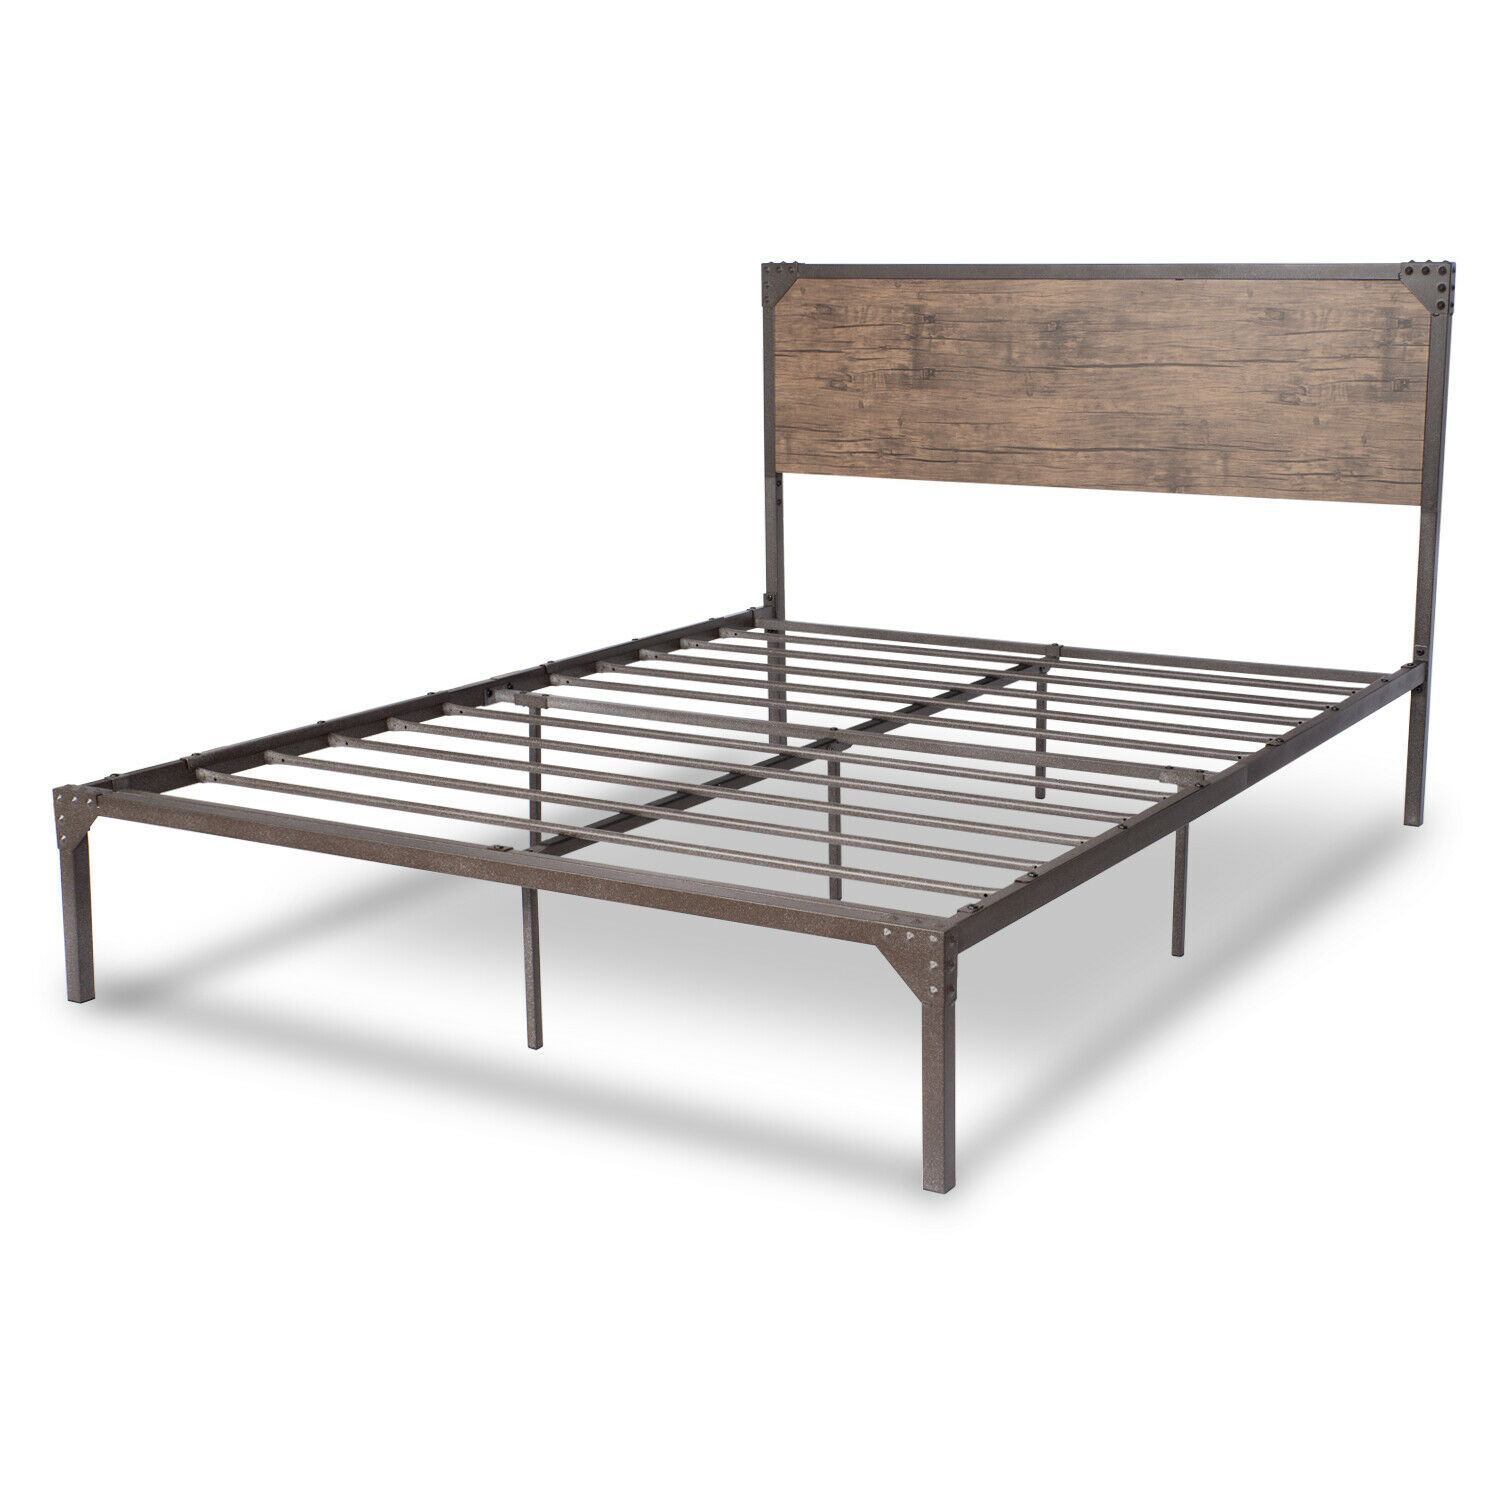 Giường sắt có đầu giường được làm từ bản gỗ phong cách